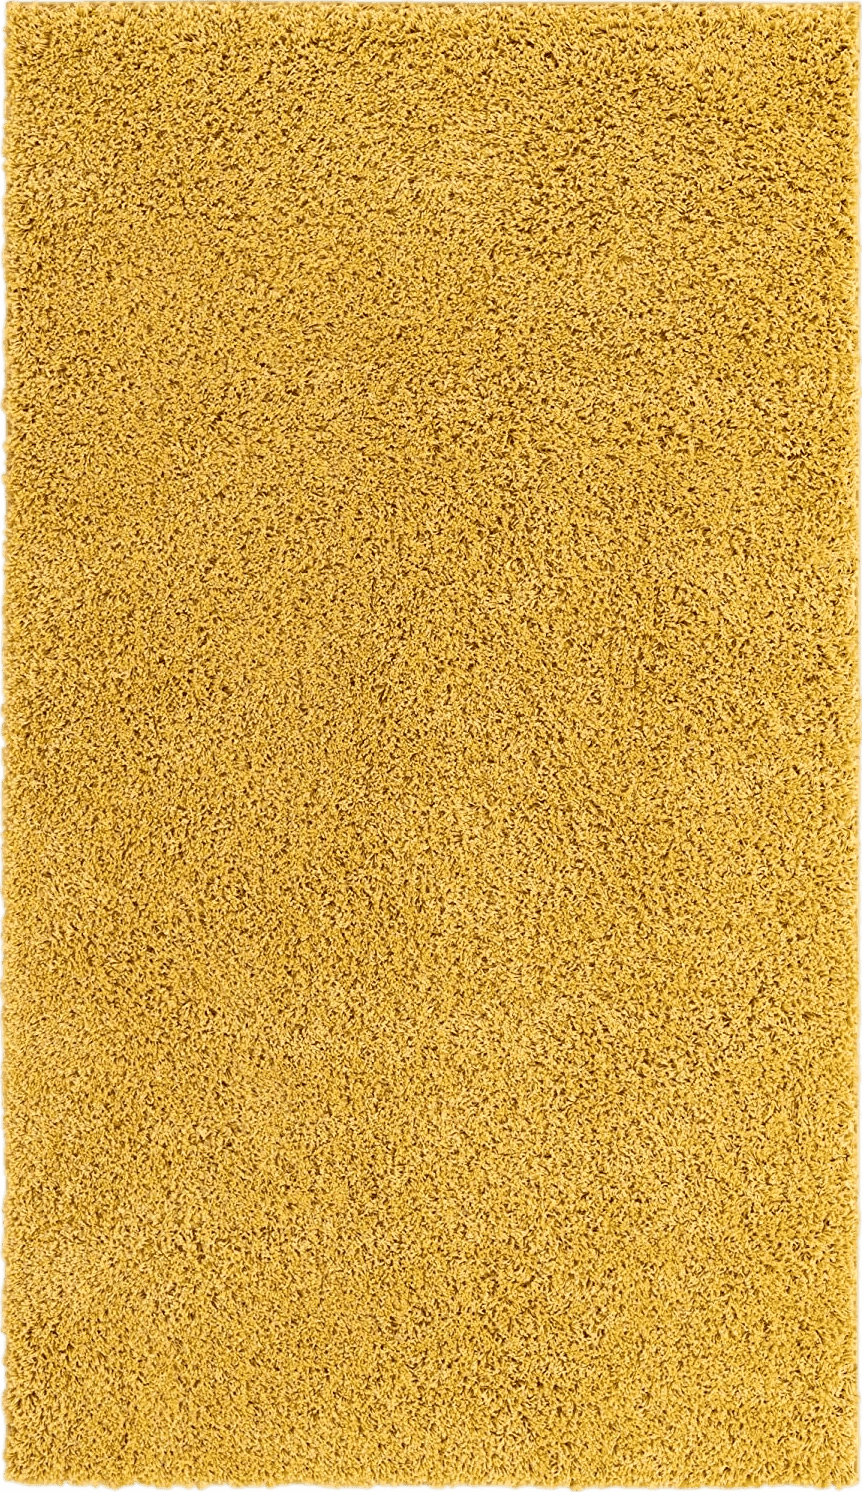 Fluffy Yellow Yellow, 5x8 Feet fluffy rug